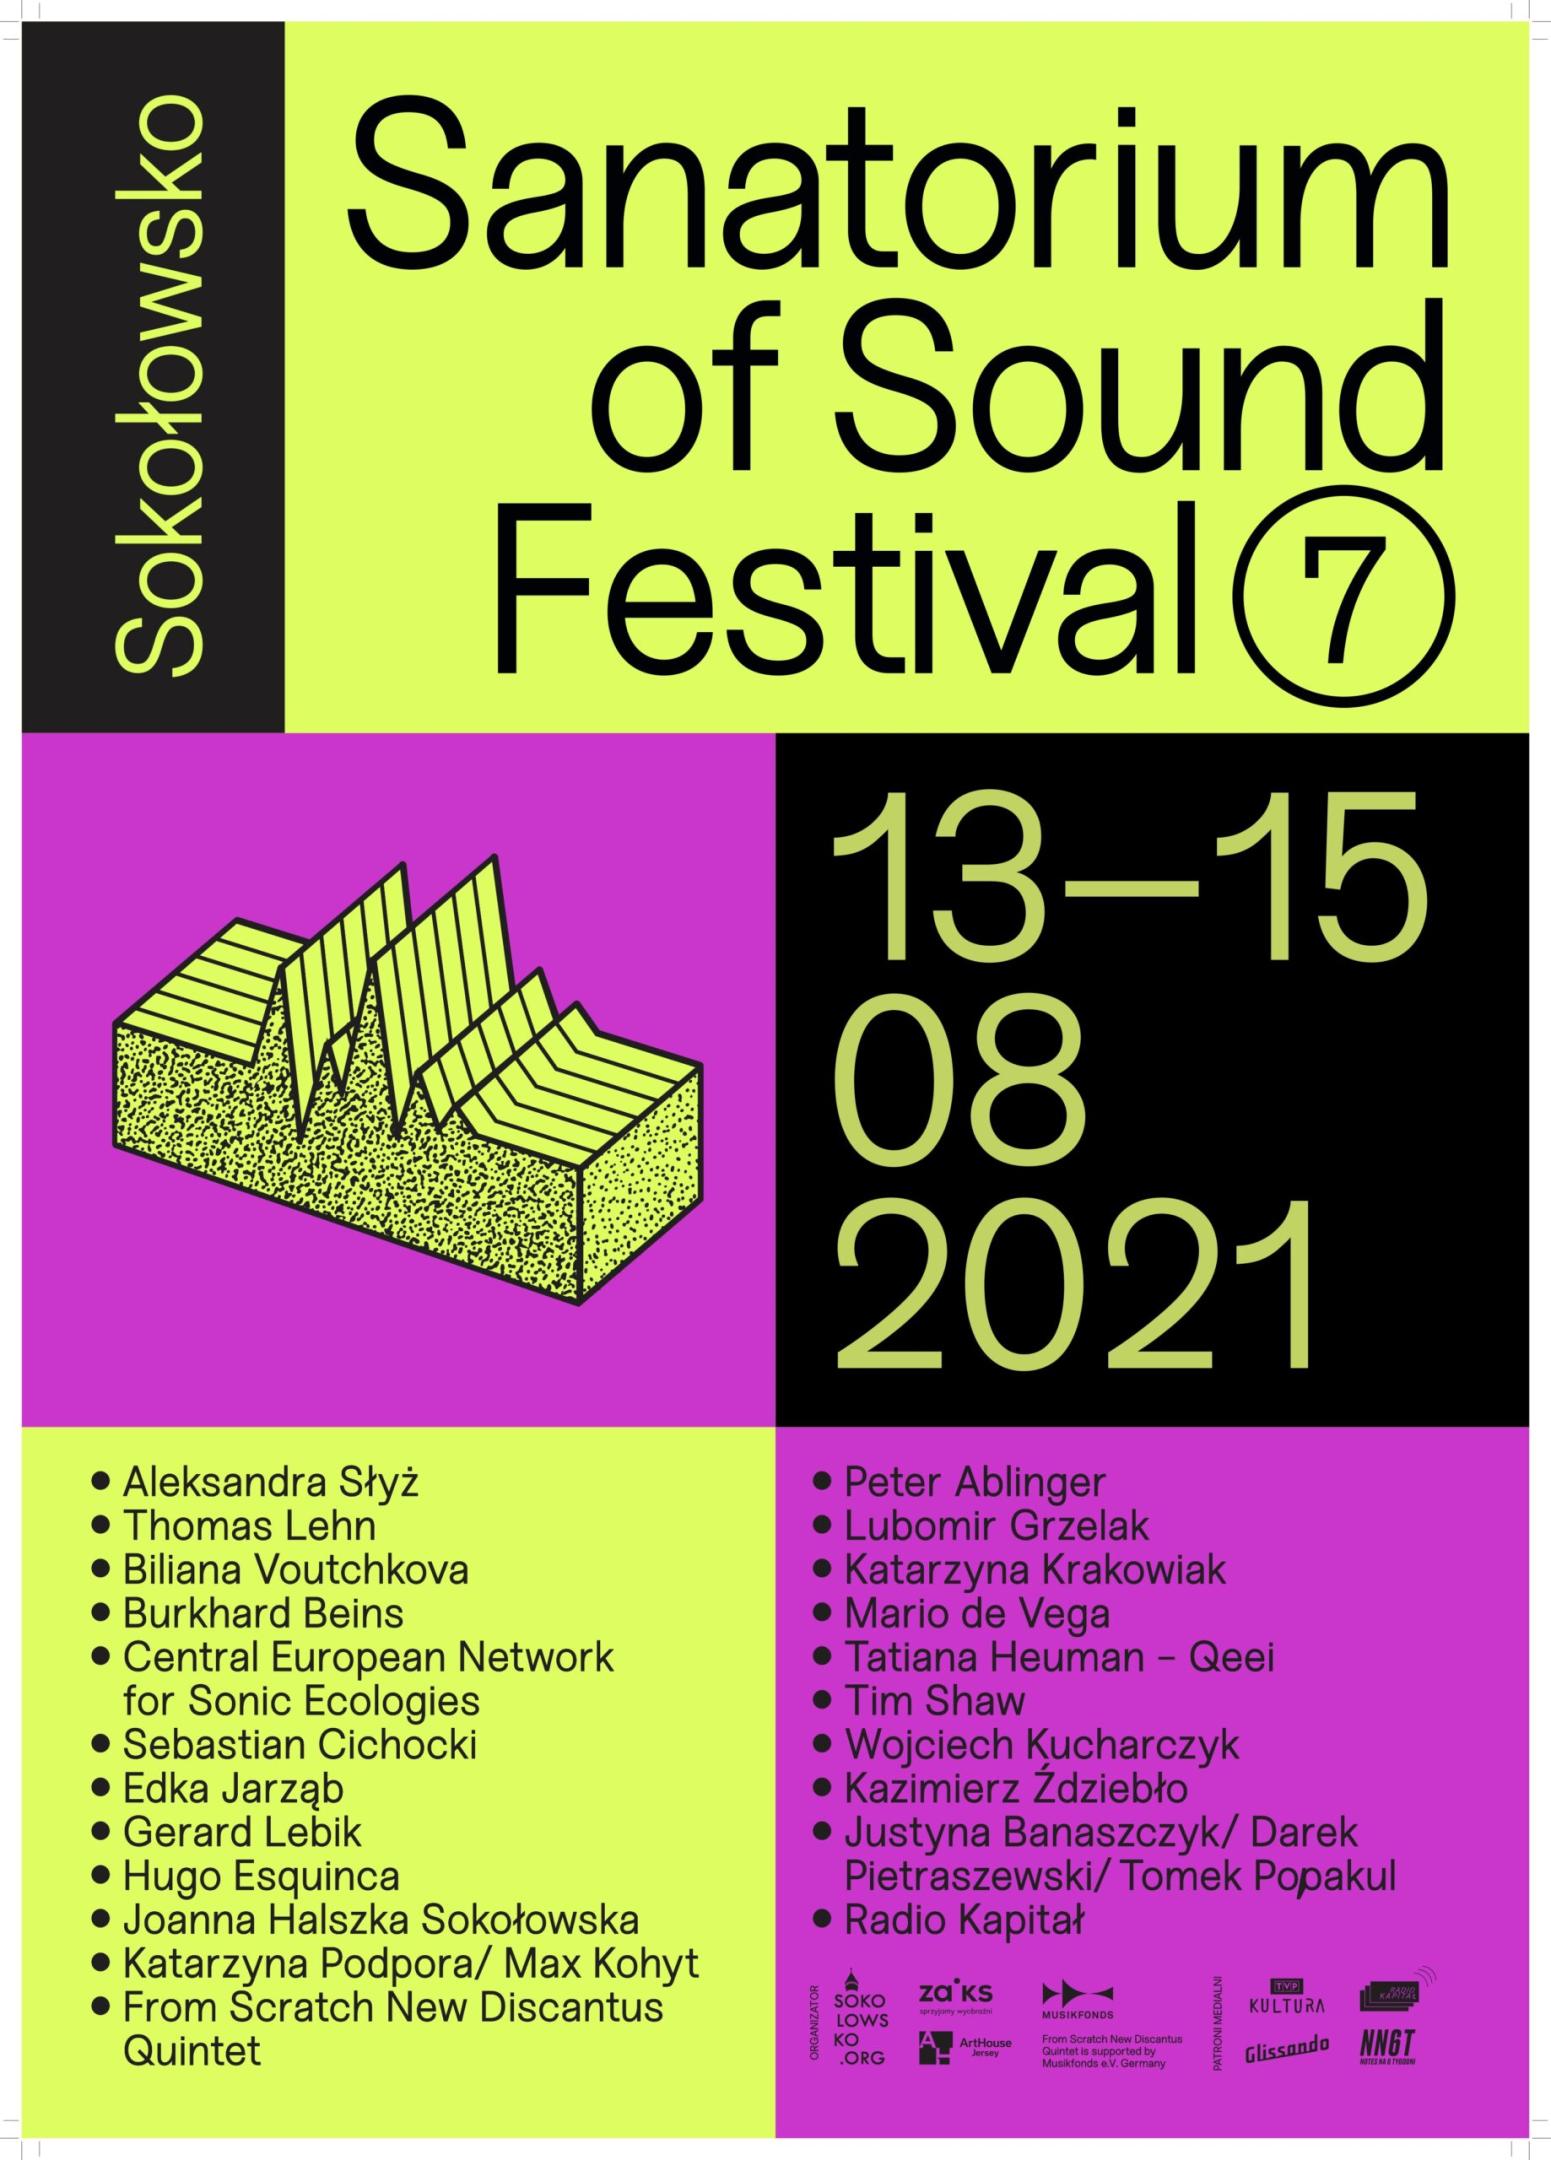 Sanatorium of Sound Festival 7